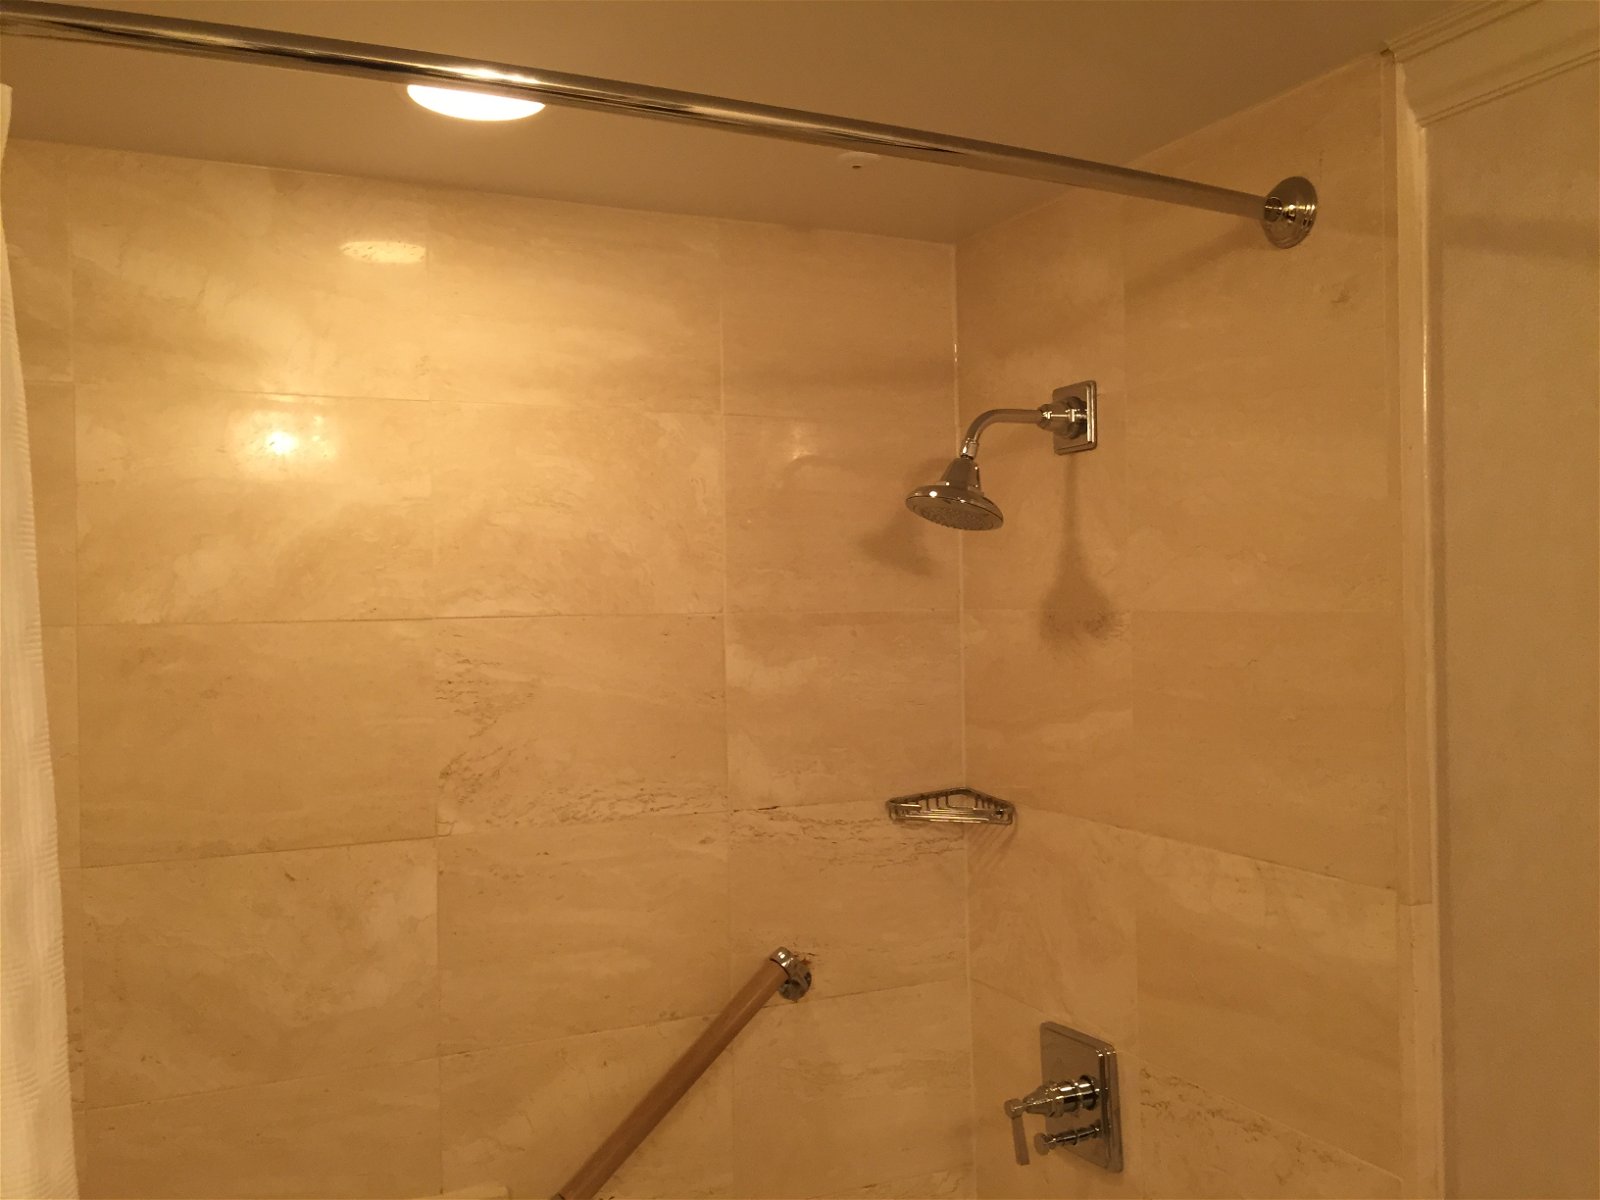 St. Regis Houston Grand Luxe Room shower